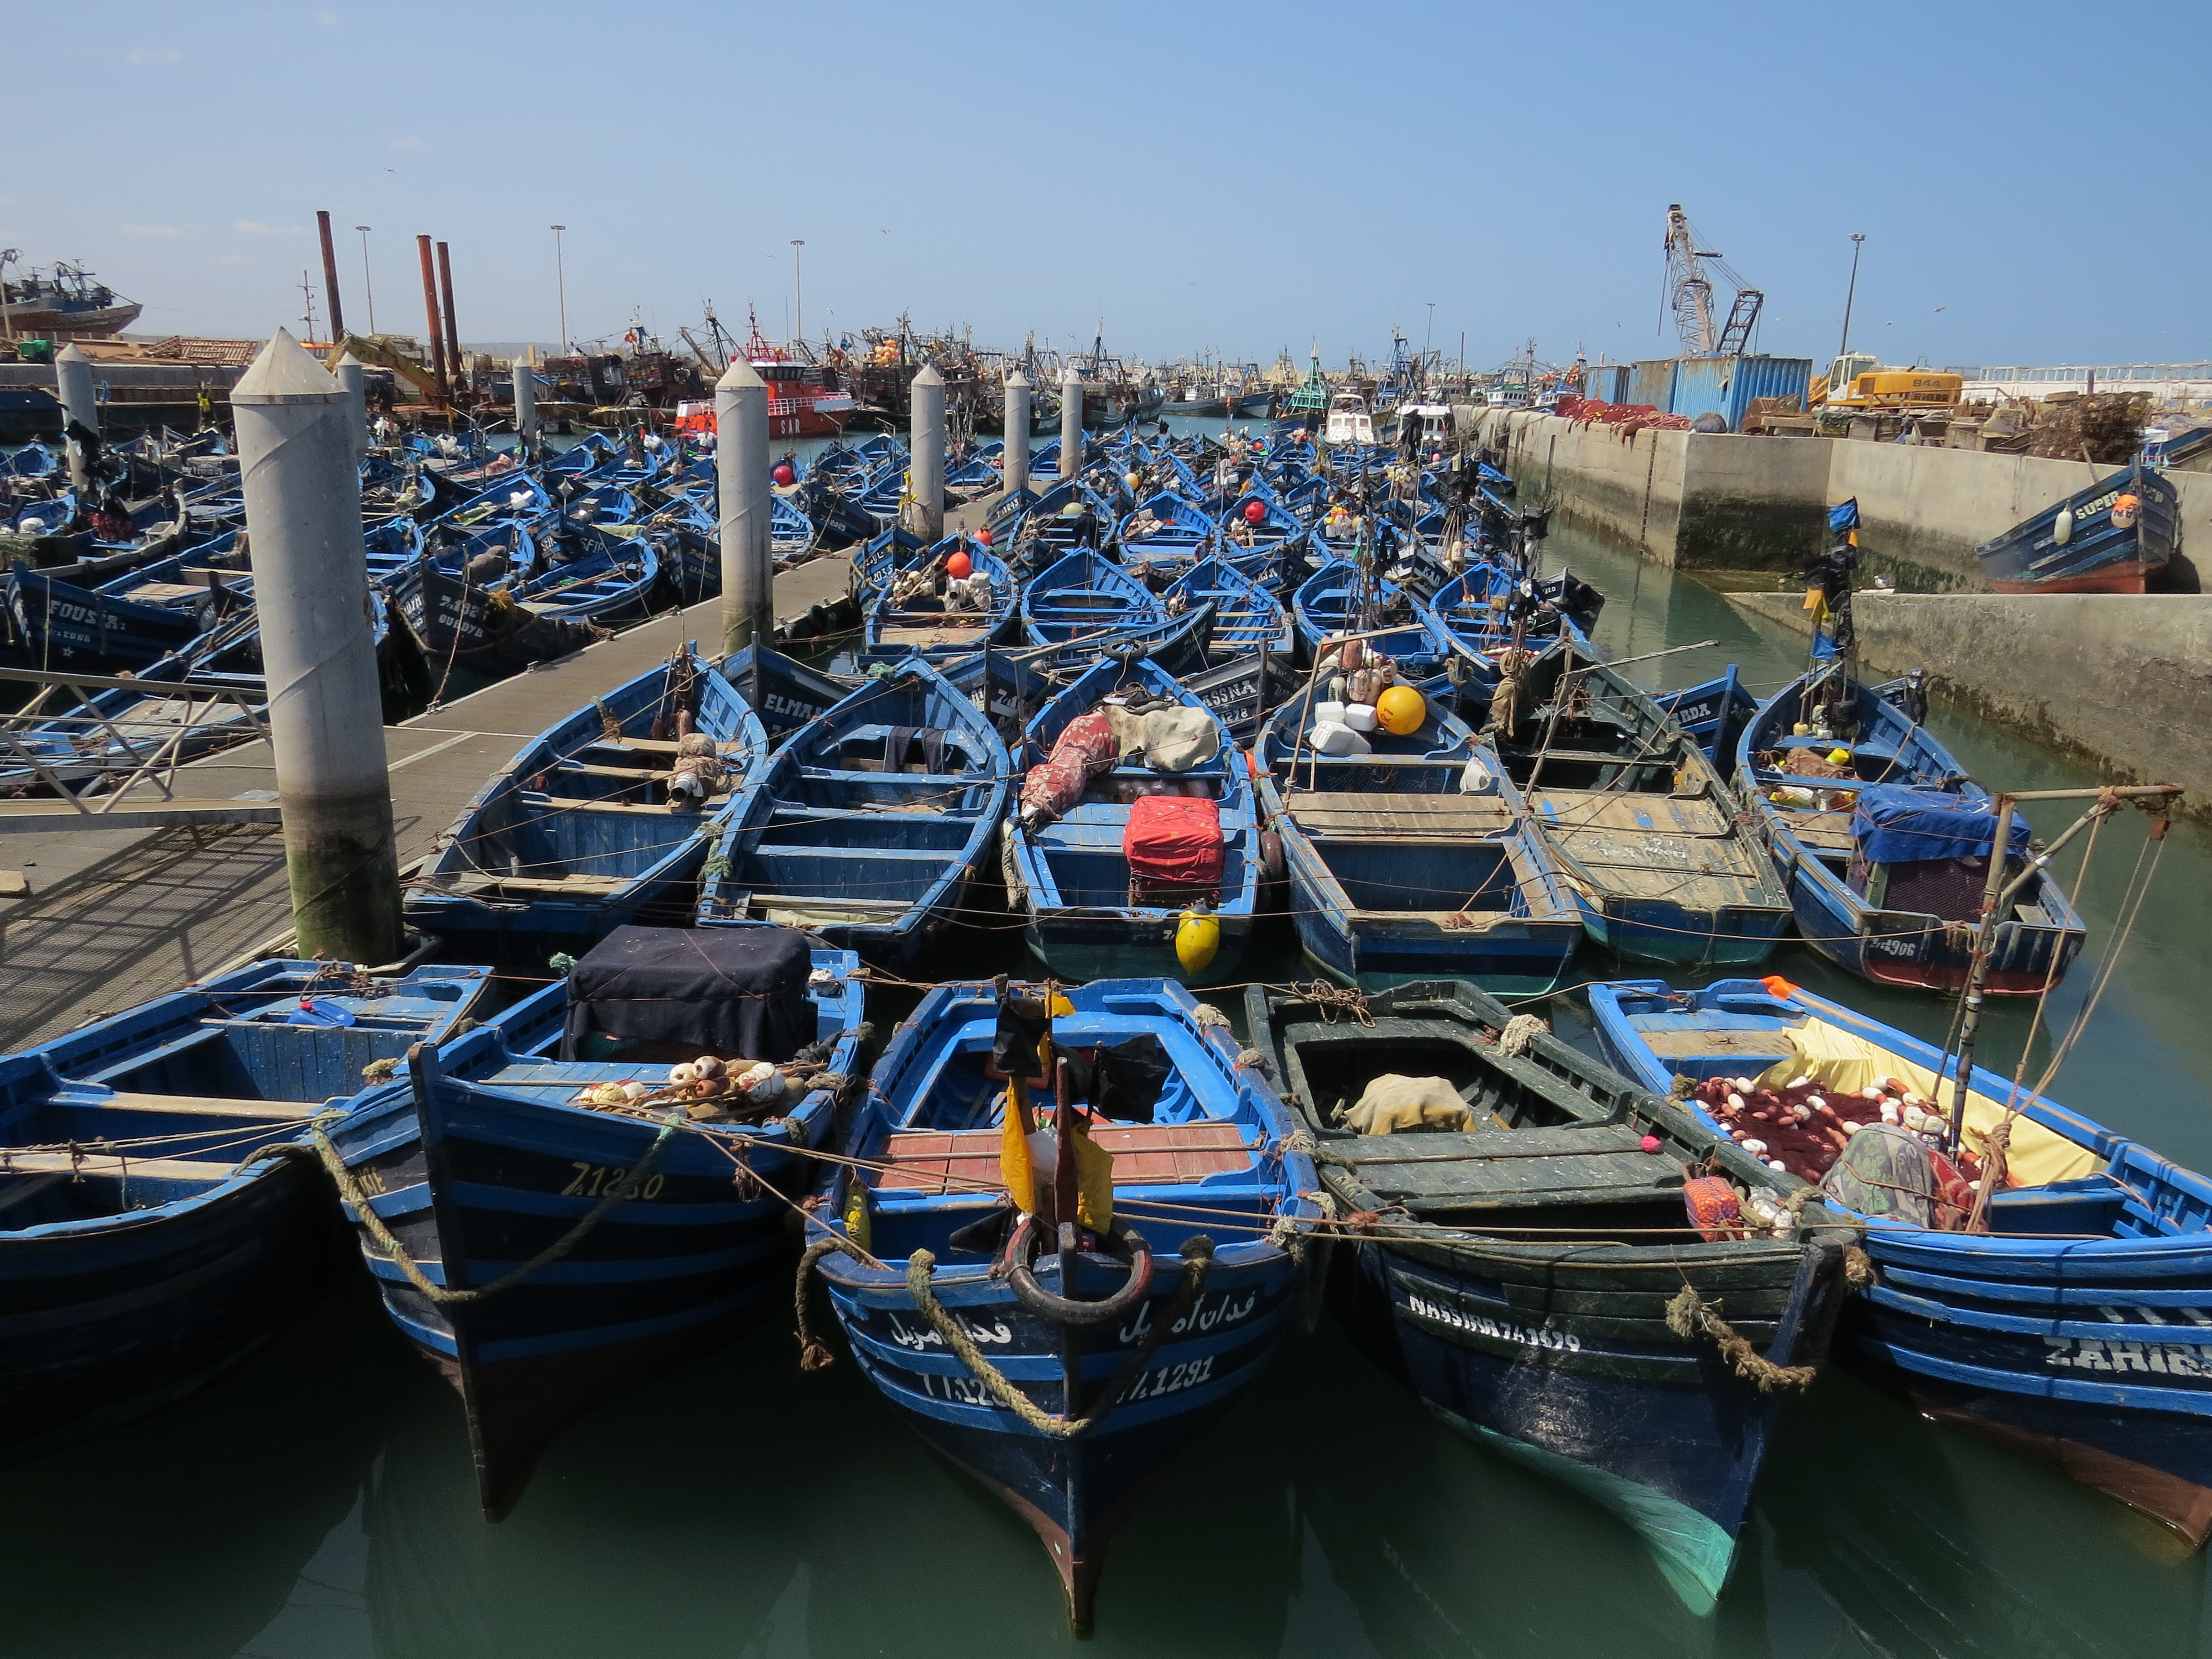 Port d'essaouira et ses bateaux de pêche bleus